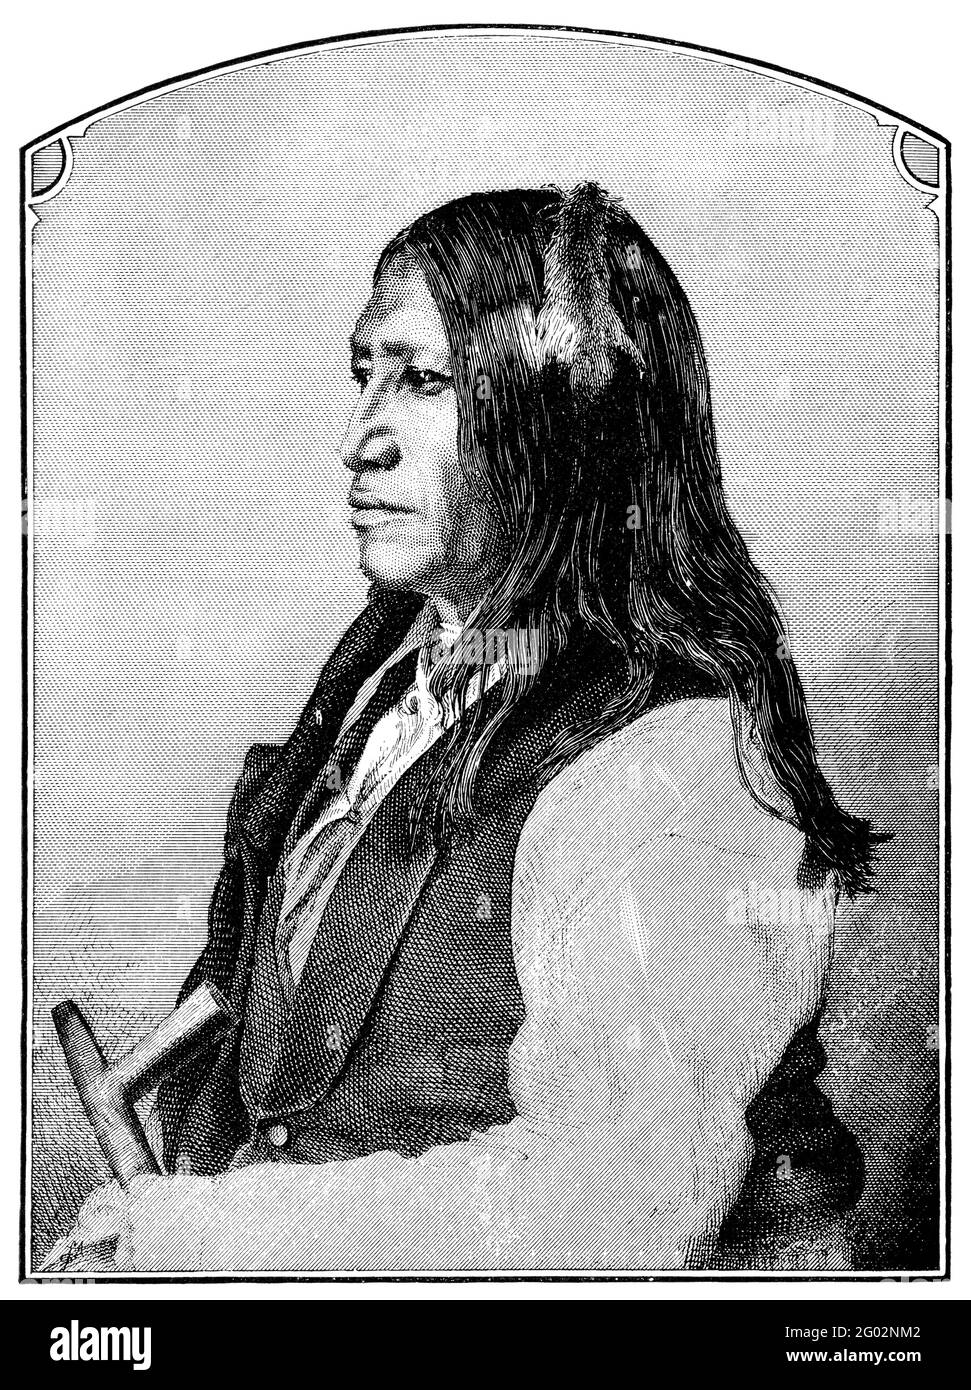 Eine gravierte Illustration von Spotted Tail, einem indianischen Ureinwohner und Chef der Sioux, aus einem viktorianischen Buch aus dem Jahr 1880, das nicht mehr kopiert ist Stockfoto